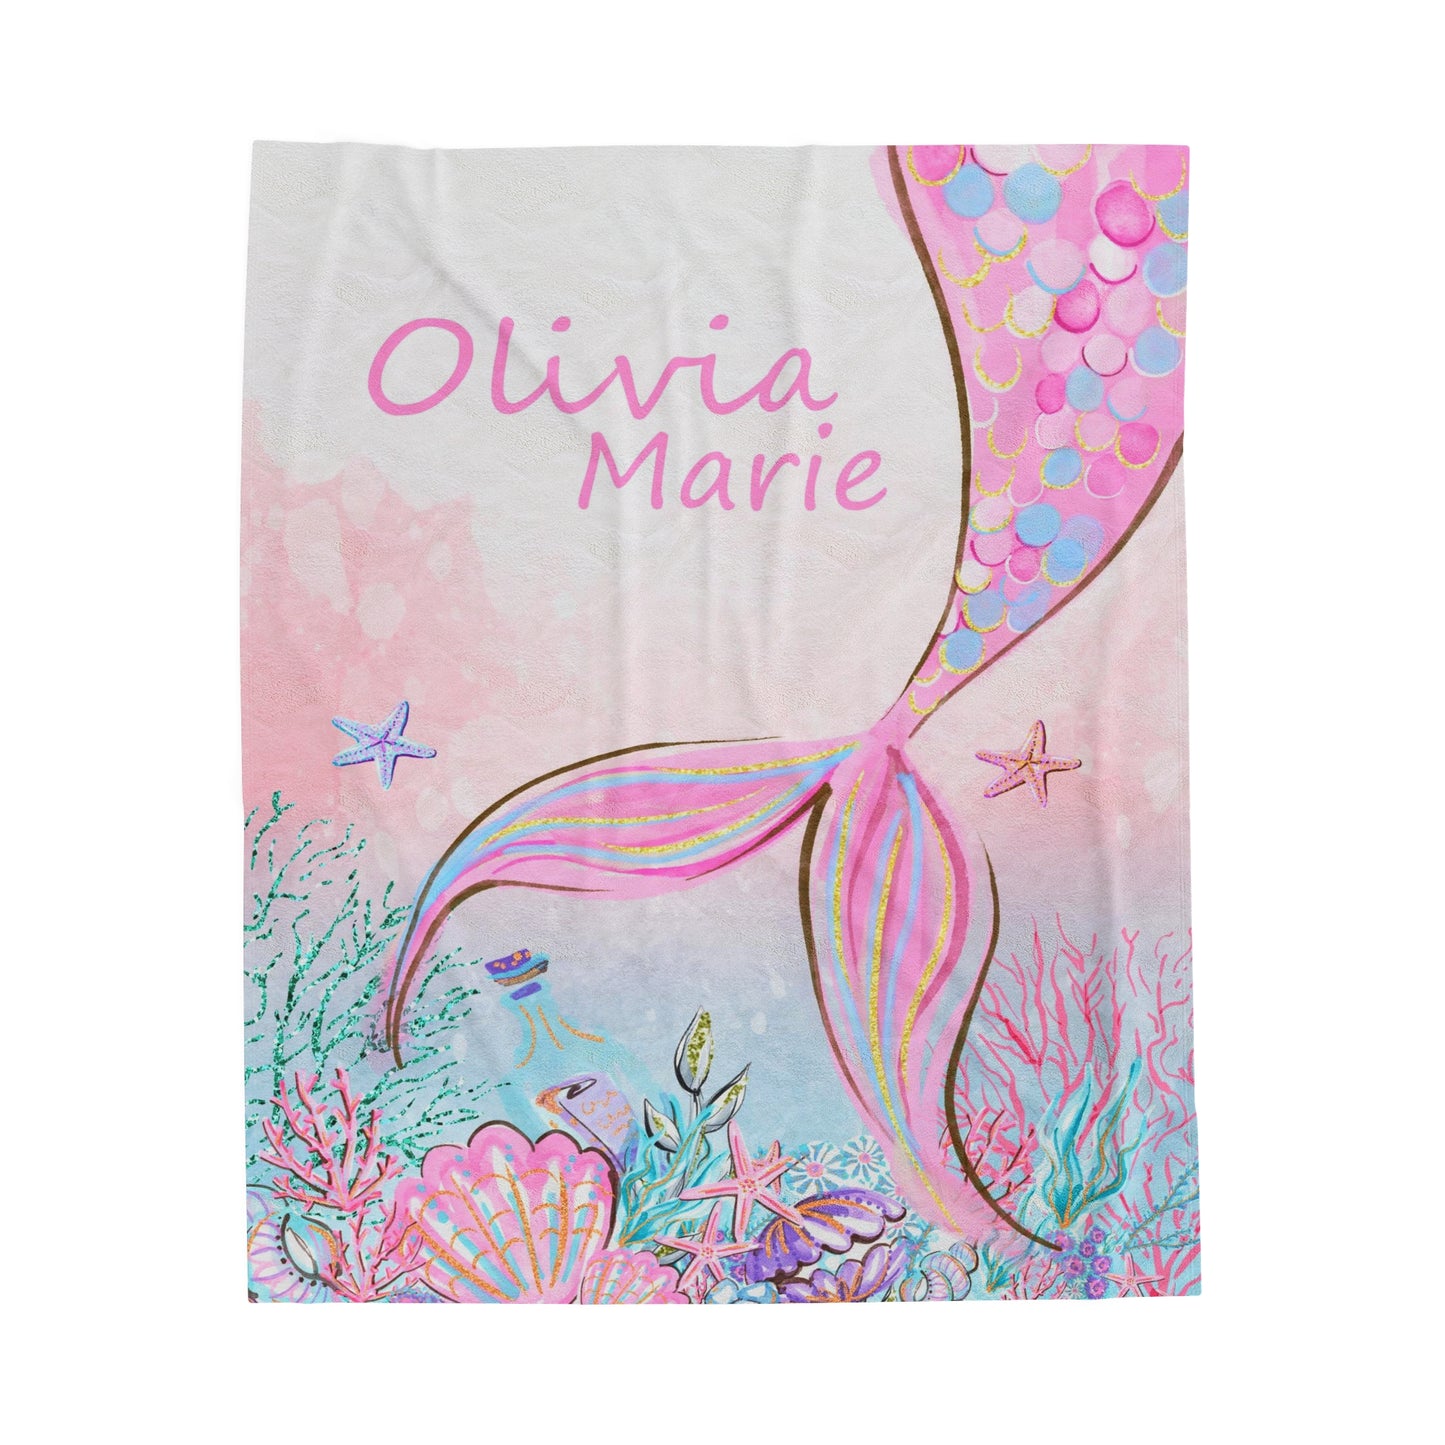 Little Mermaid Personalized Minky Blanket, Little mermaid Nursery Bedding - Pink Mermaid